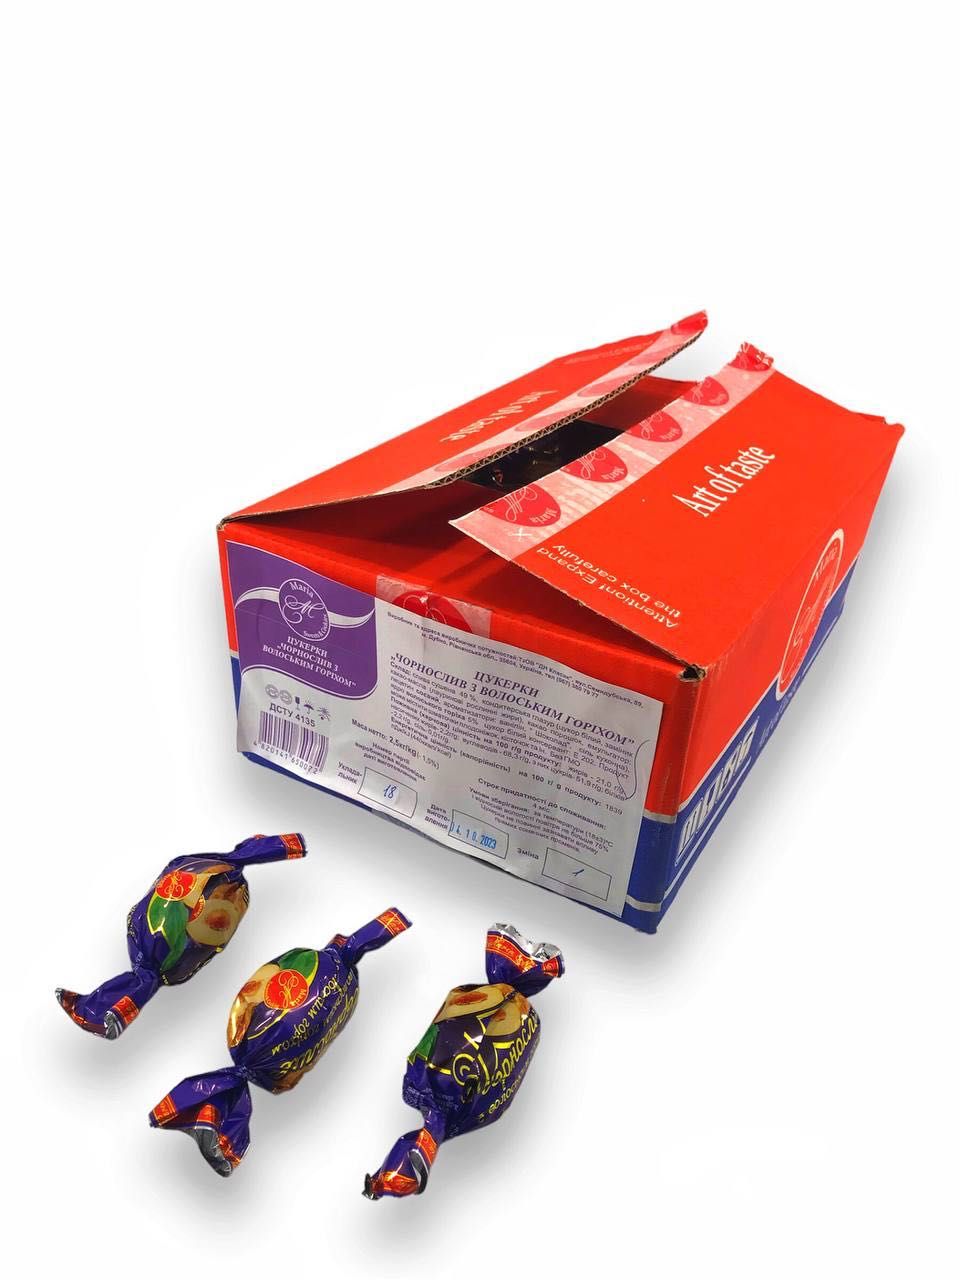 TM Maria шоколадні цукерки ЧОРНОСЛИВ з ВОЛОСЬКОГО ГОРІХОМ 2,5 кг(ящик)